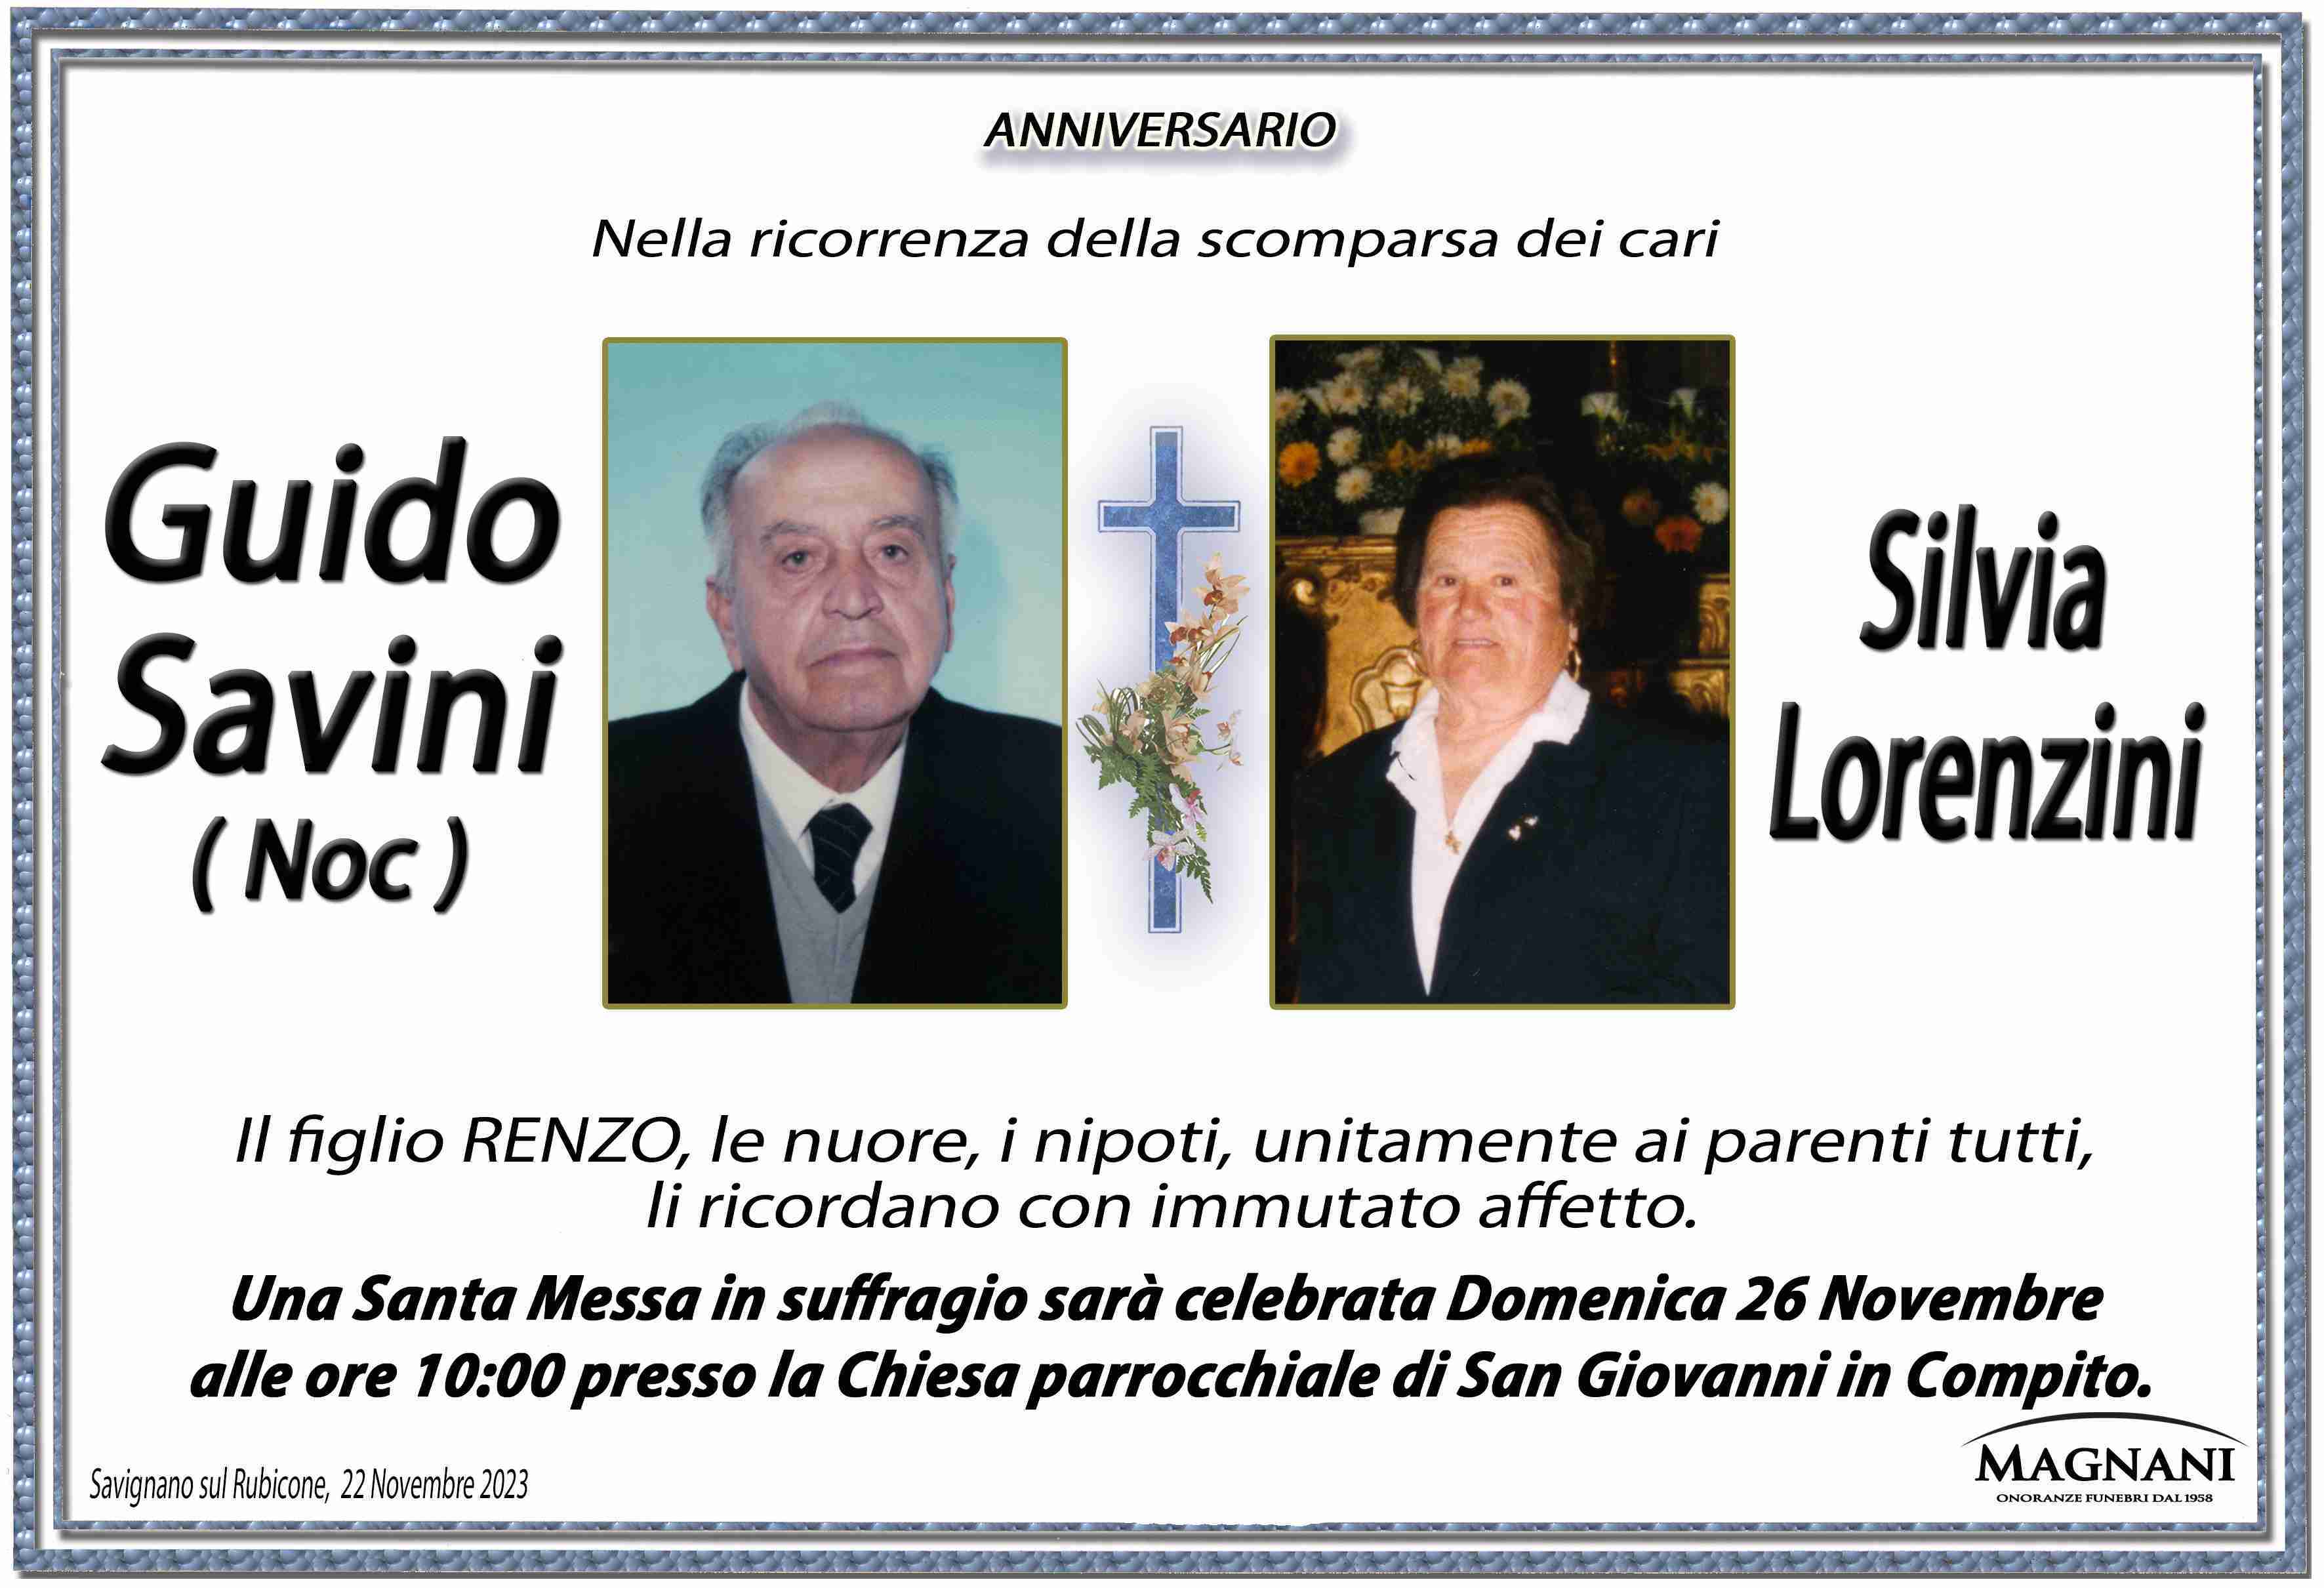 Guido Savini e Silvia Lorenzini